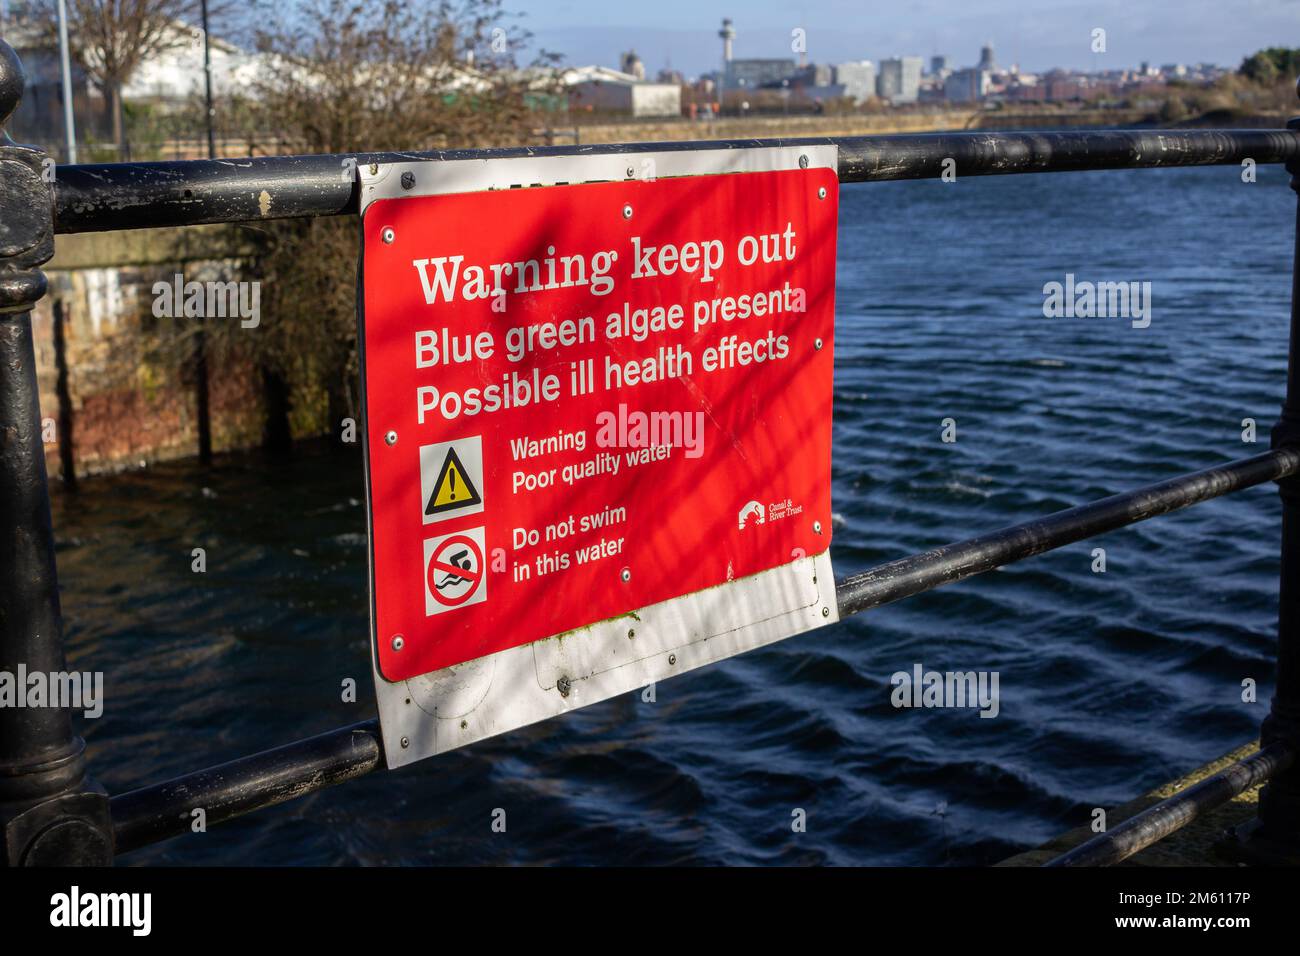 Birkenhead, UK: Warnschild „Verweilen verboten“, Morpeth Dock. Blaue grüne Algen vorhanden. Mögliche Gesundheitsschäden. Schlechte Wasserqualität. Nicht schwimmen. Stockfoto